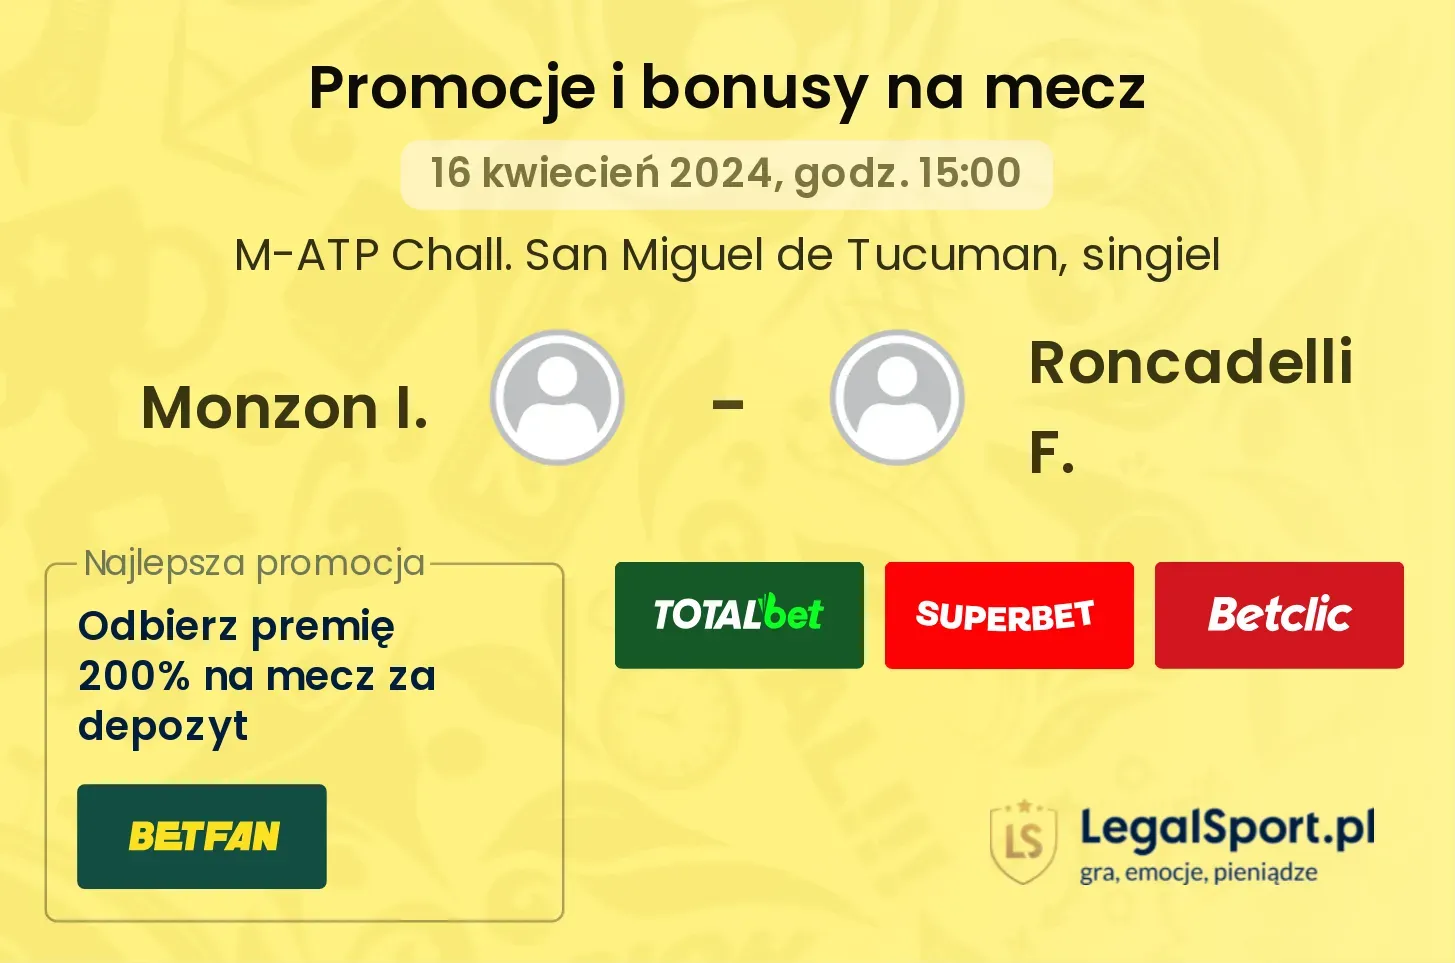 Monzon I. - Roncadelli F. promocje bonusy na mecz